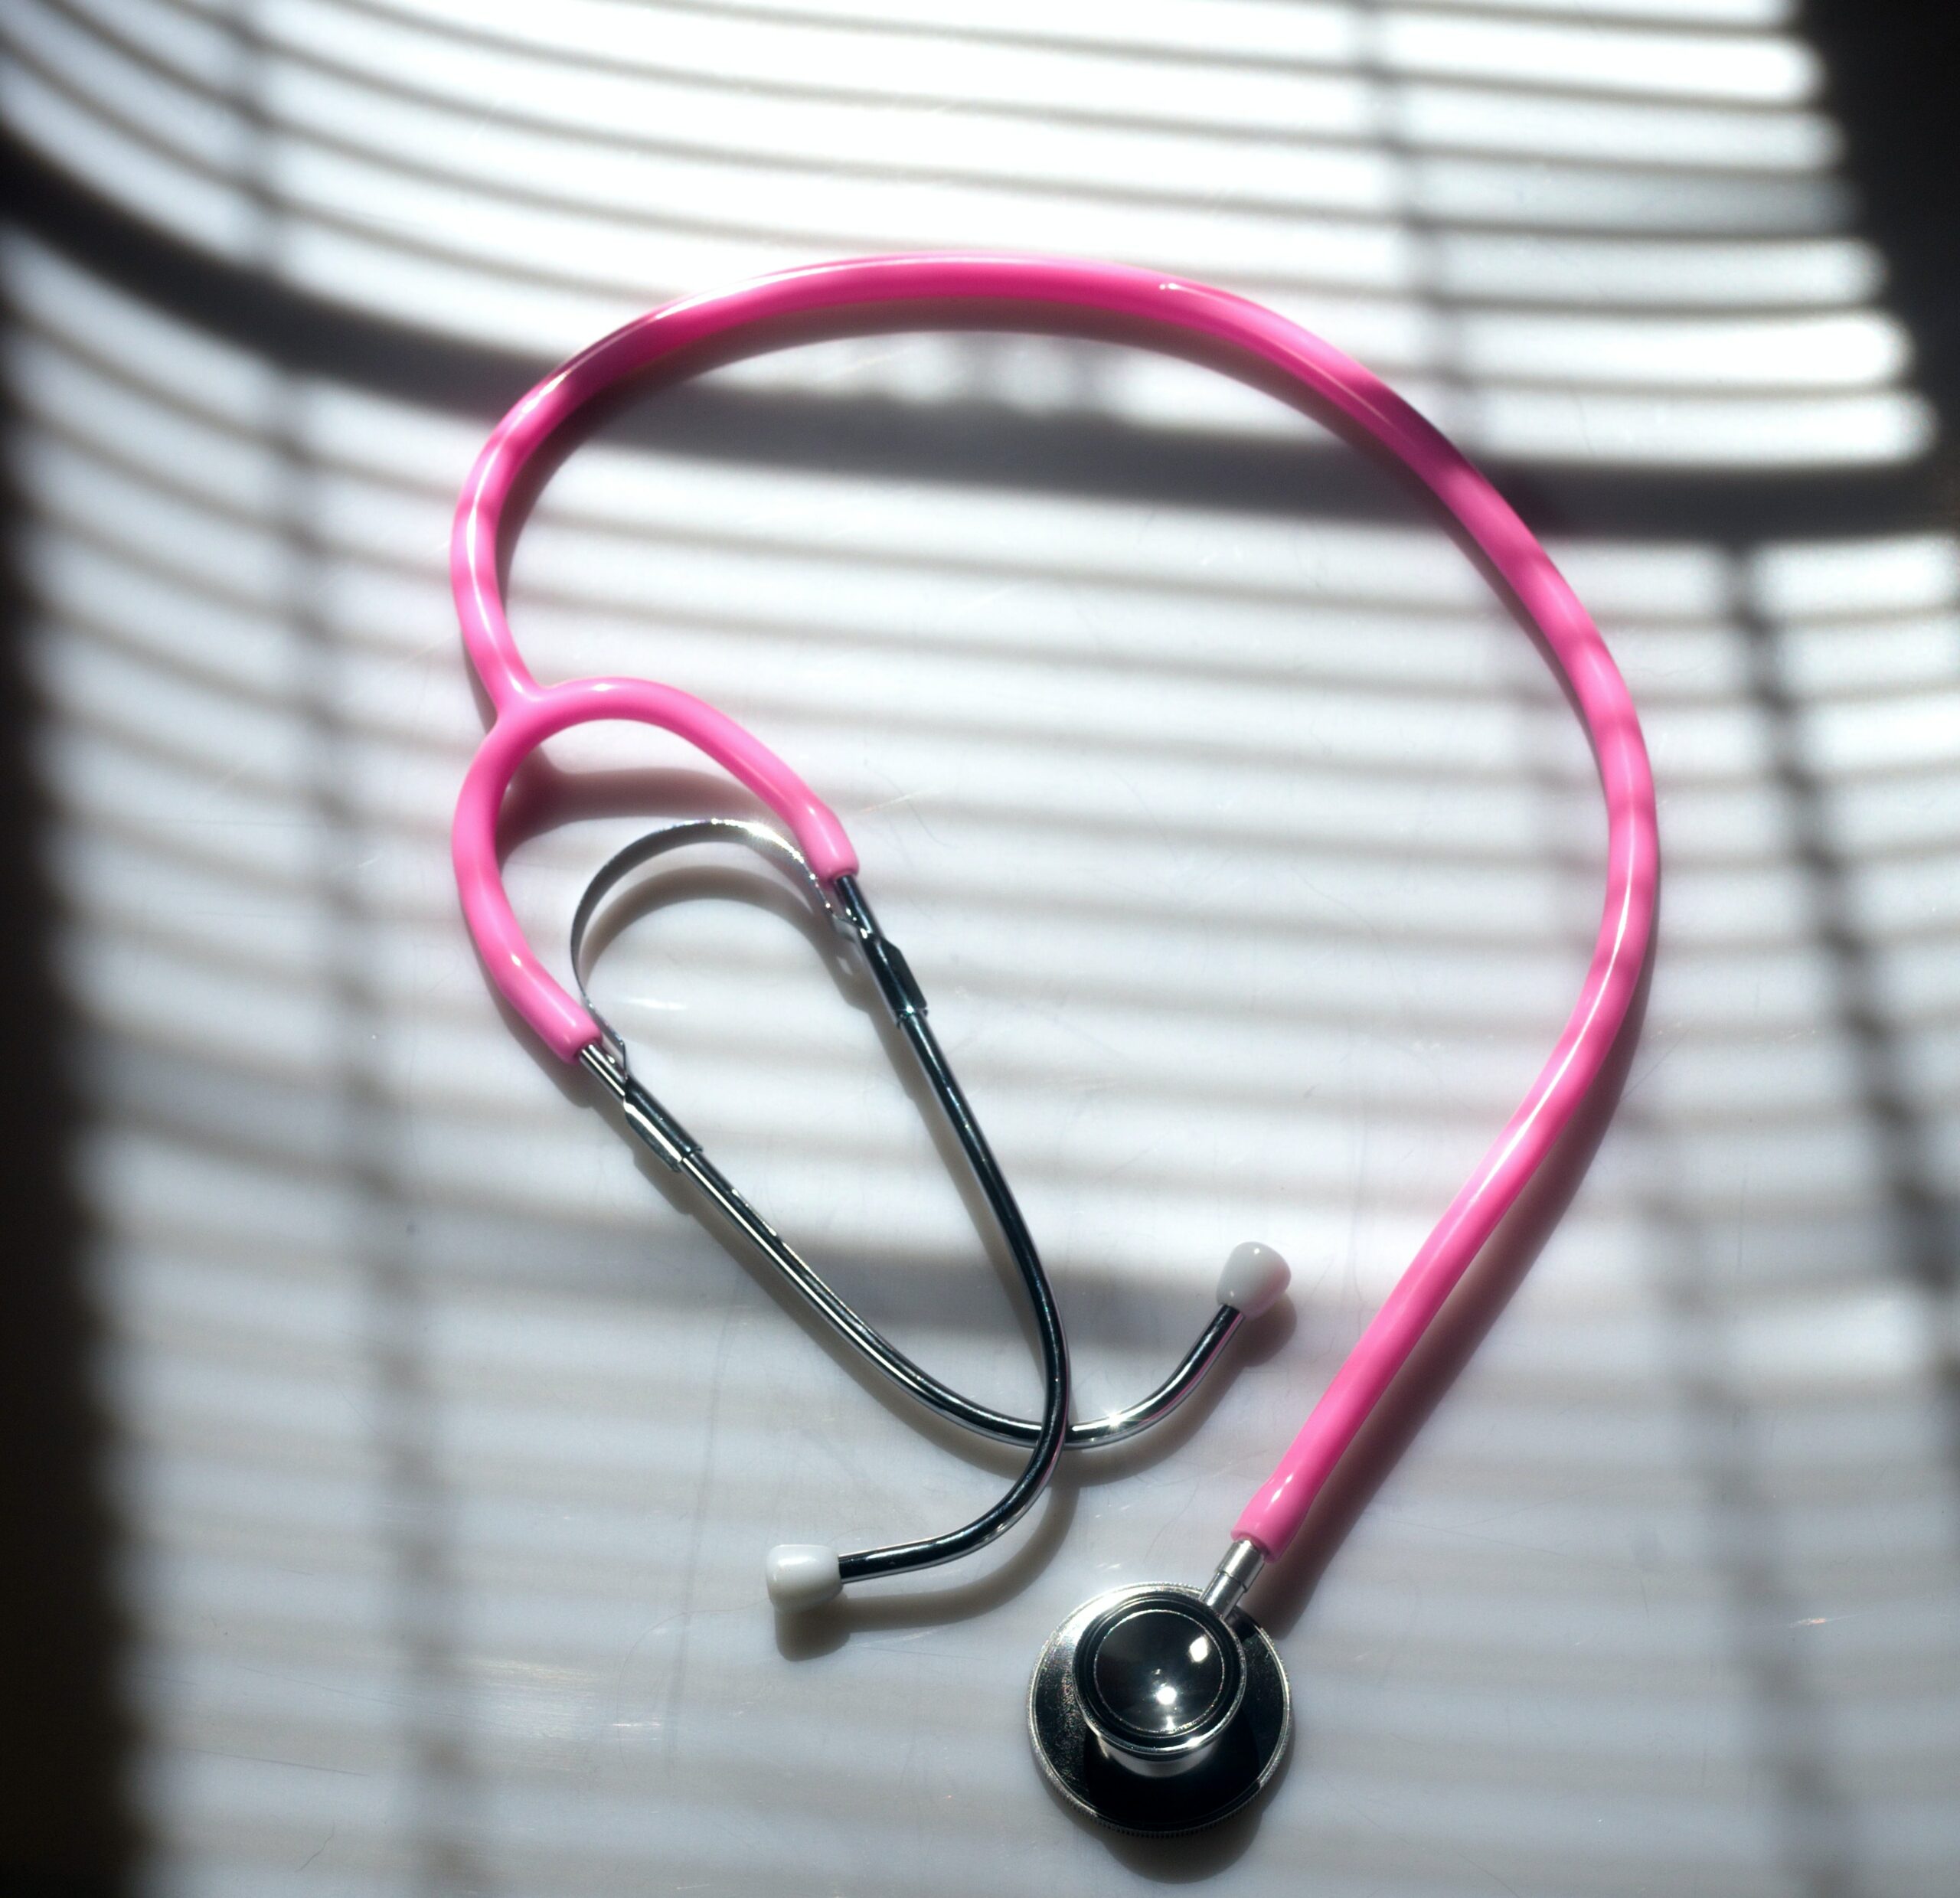 طبيبة قامت بتزوير أكثر من 16 شهادة صحية في ساكسونيا السفلى